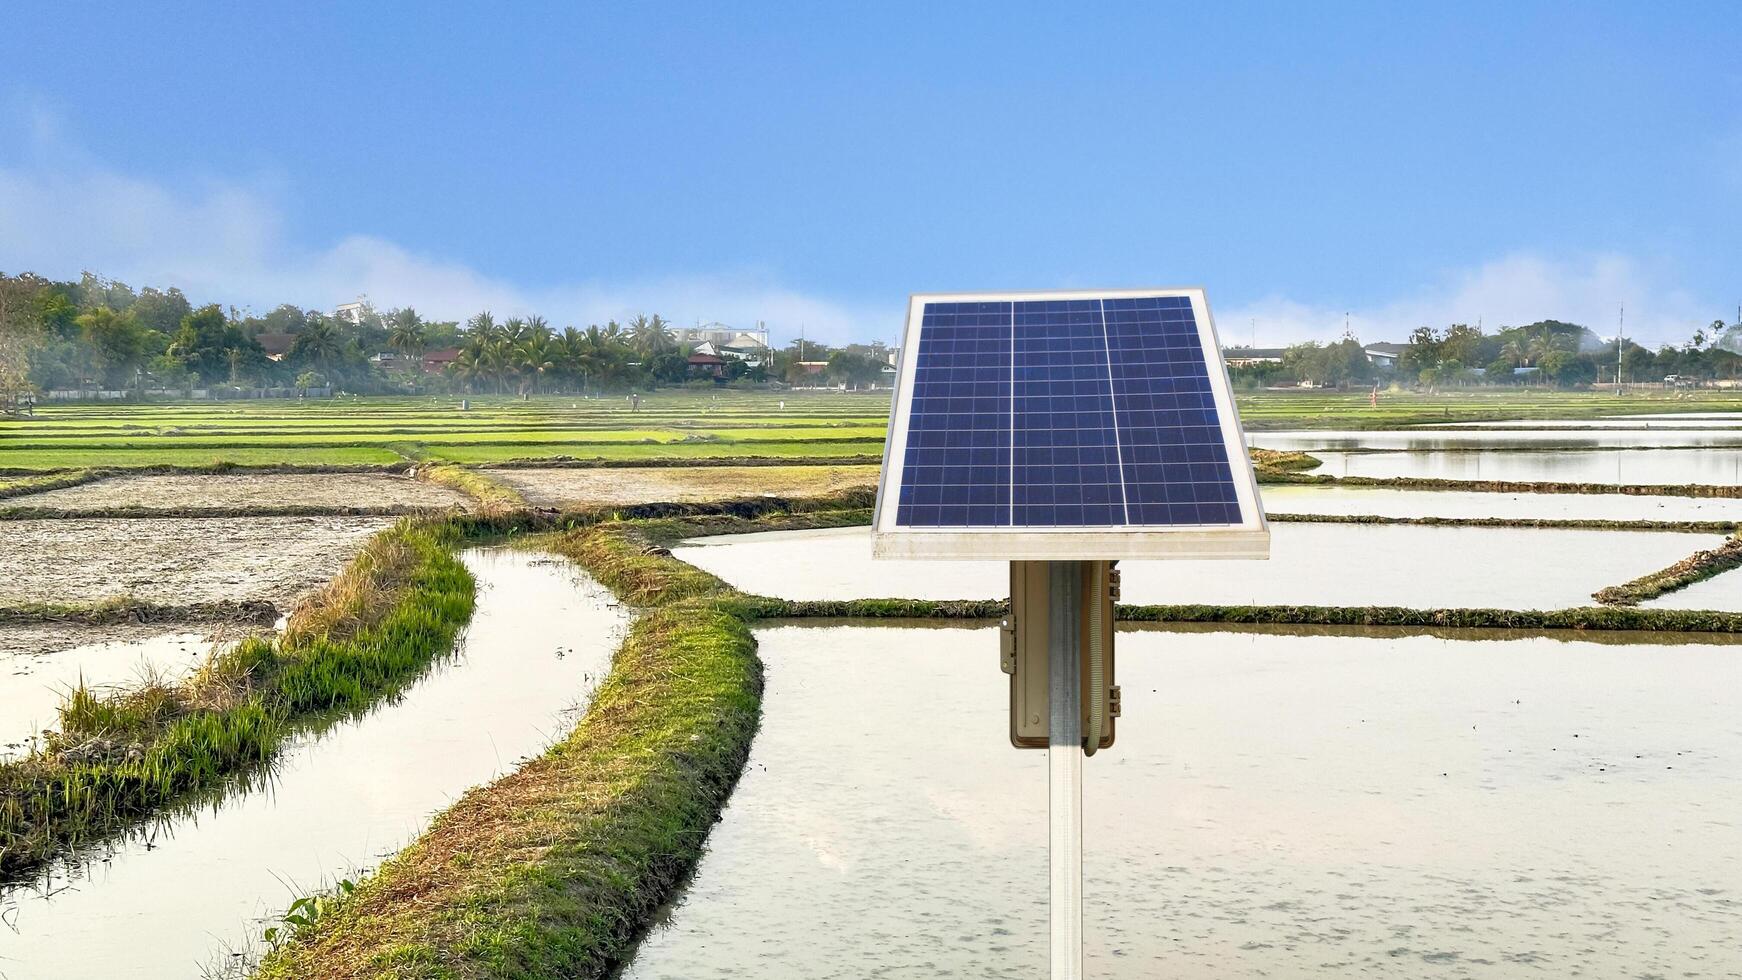 arrozal campo regado con solar energía en rural zona foto